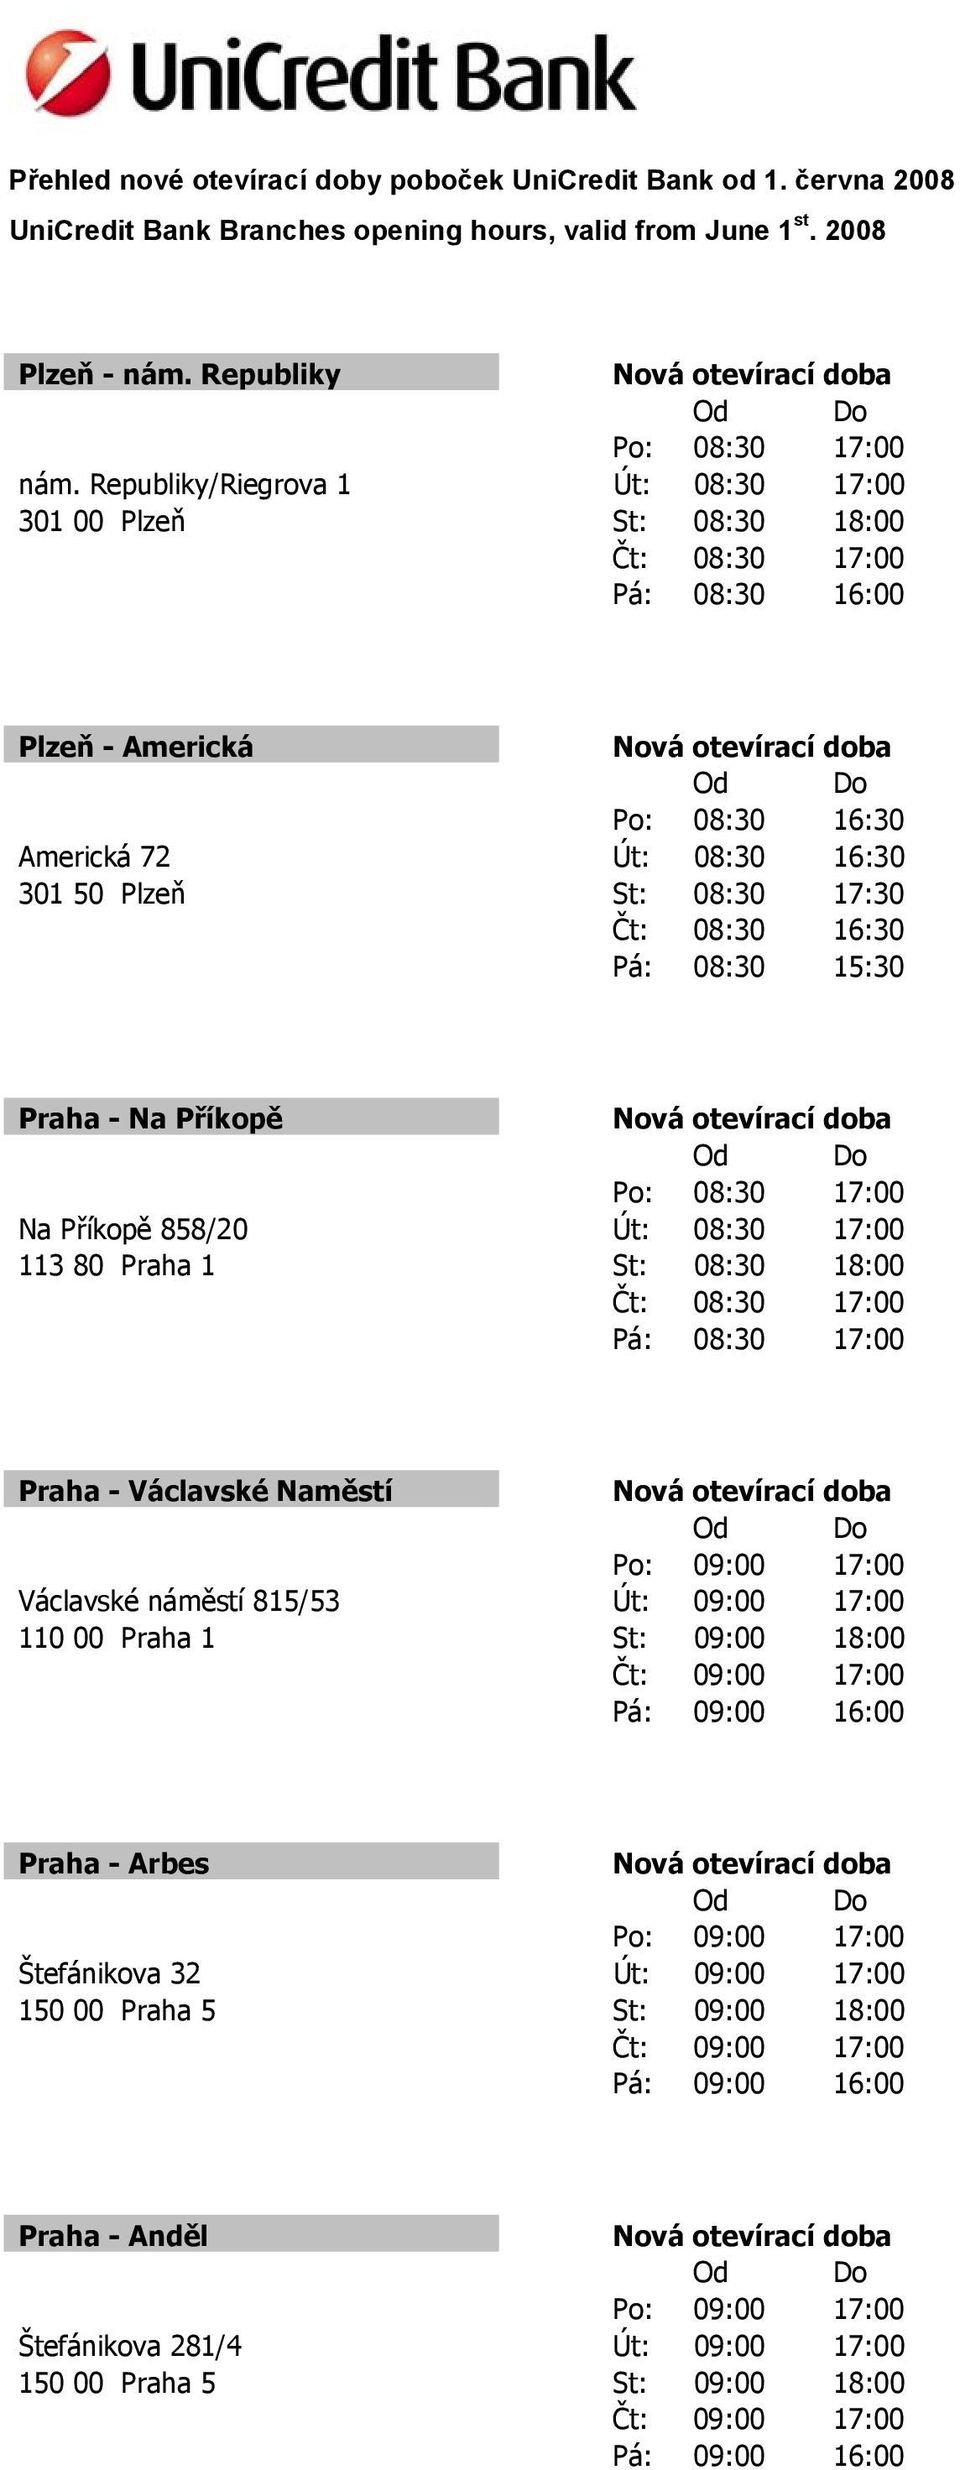 Plzeň St: 08:30 17:30 Praha - Na Příkopě Na Příkopě 858/20 Út: 08:30 17:00 113 80 Praha 1 St: 08:30 18:00 Pá: 08:30 17:00